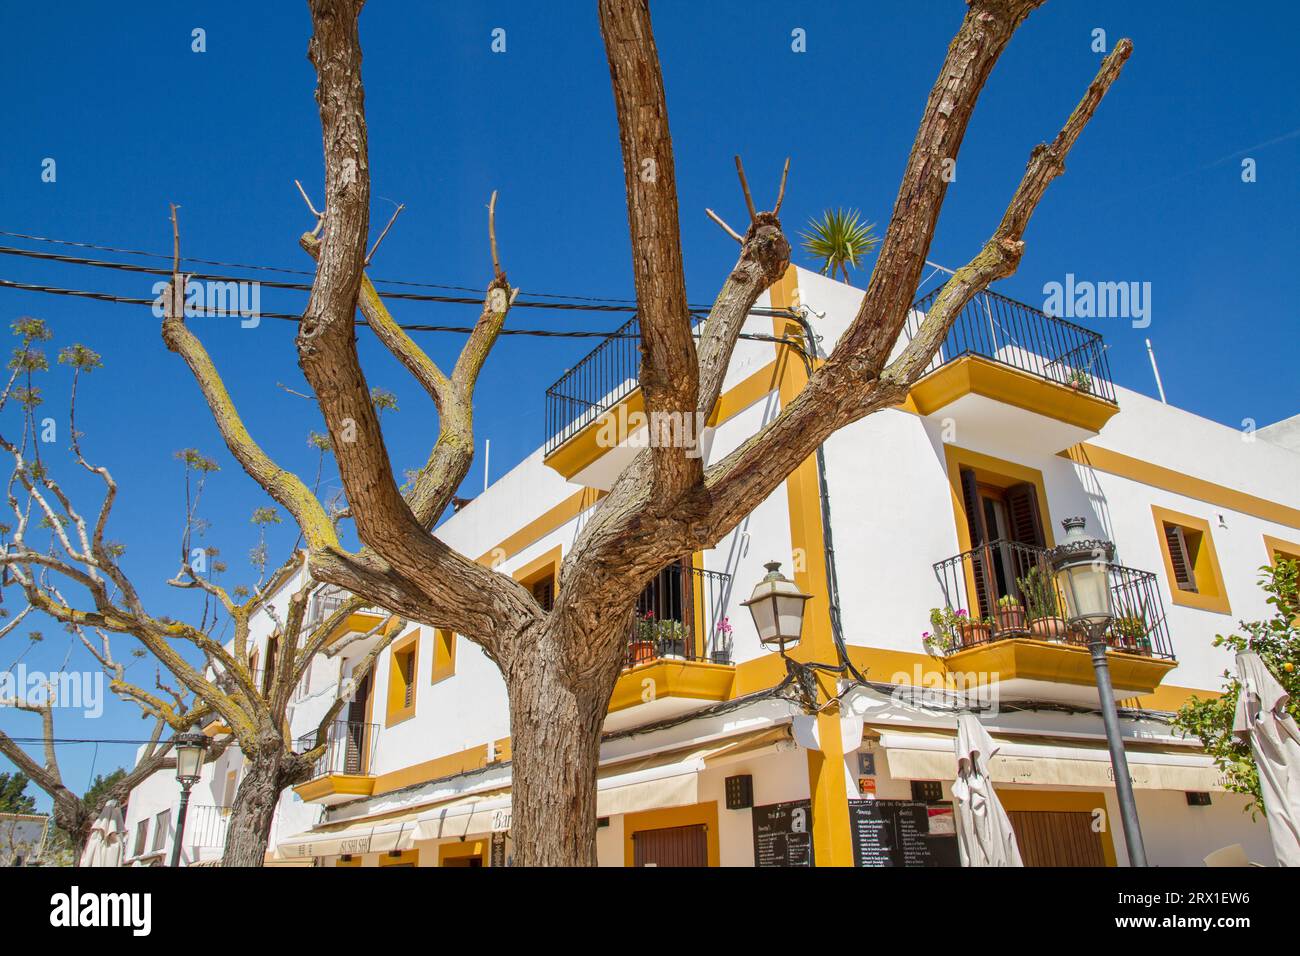 Il pittoresco villaggio di Santa Gertrudis, famoso luogo per una gita di un giorno sull'isola di Ibiza, le isole Baleari, la Spagna e l'Europa Foto Stock